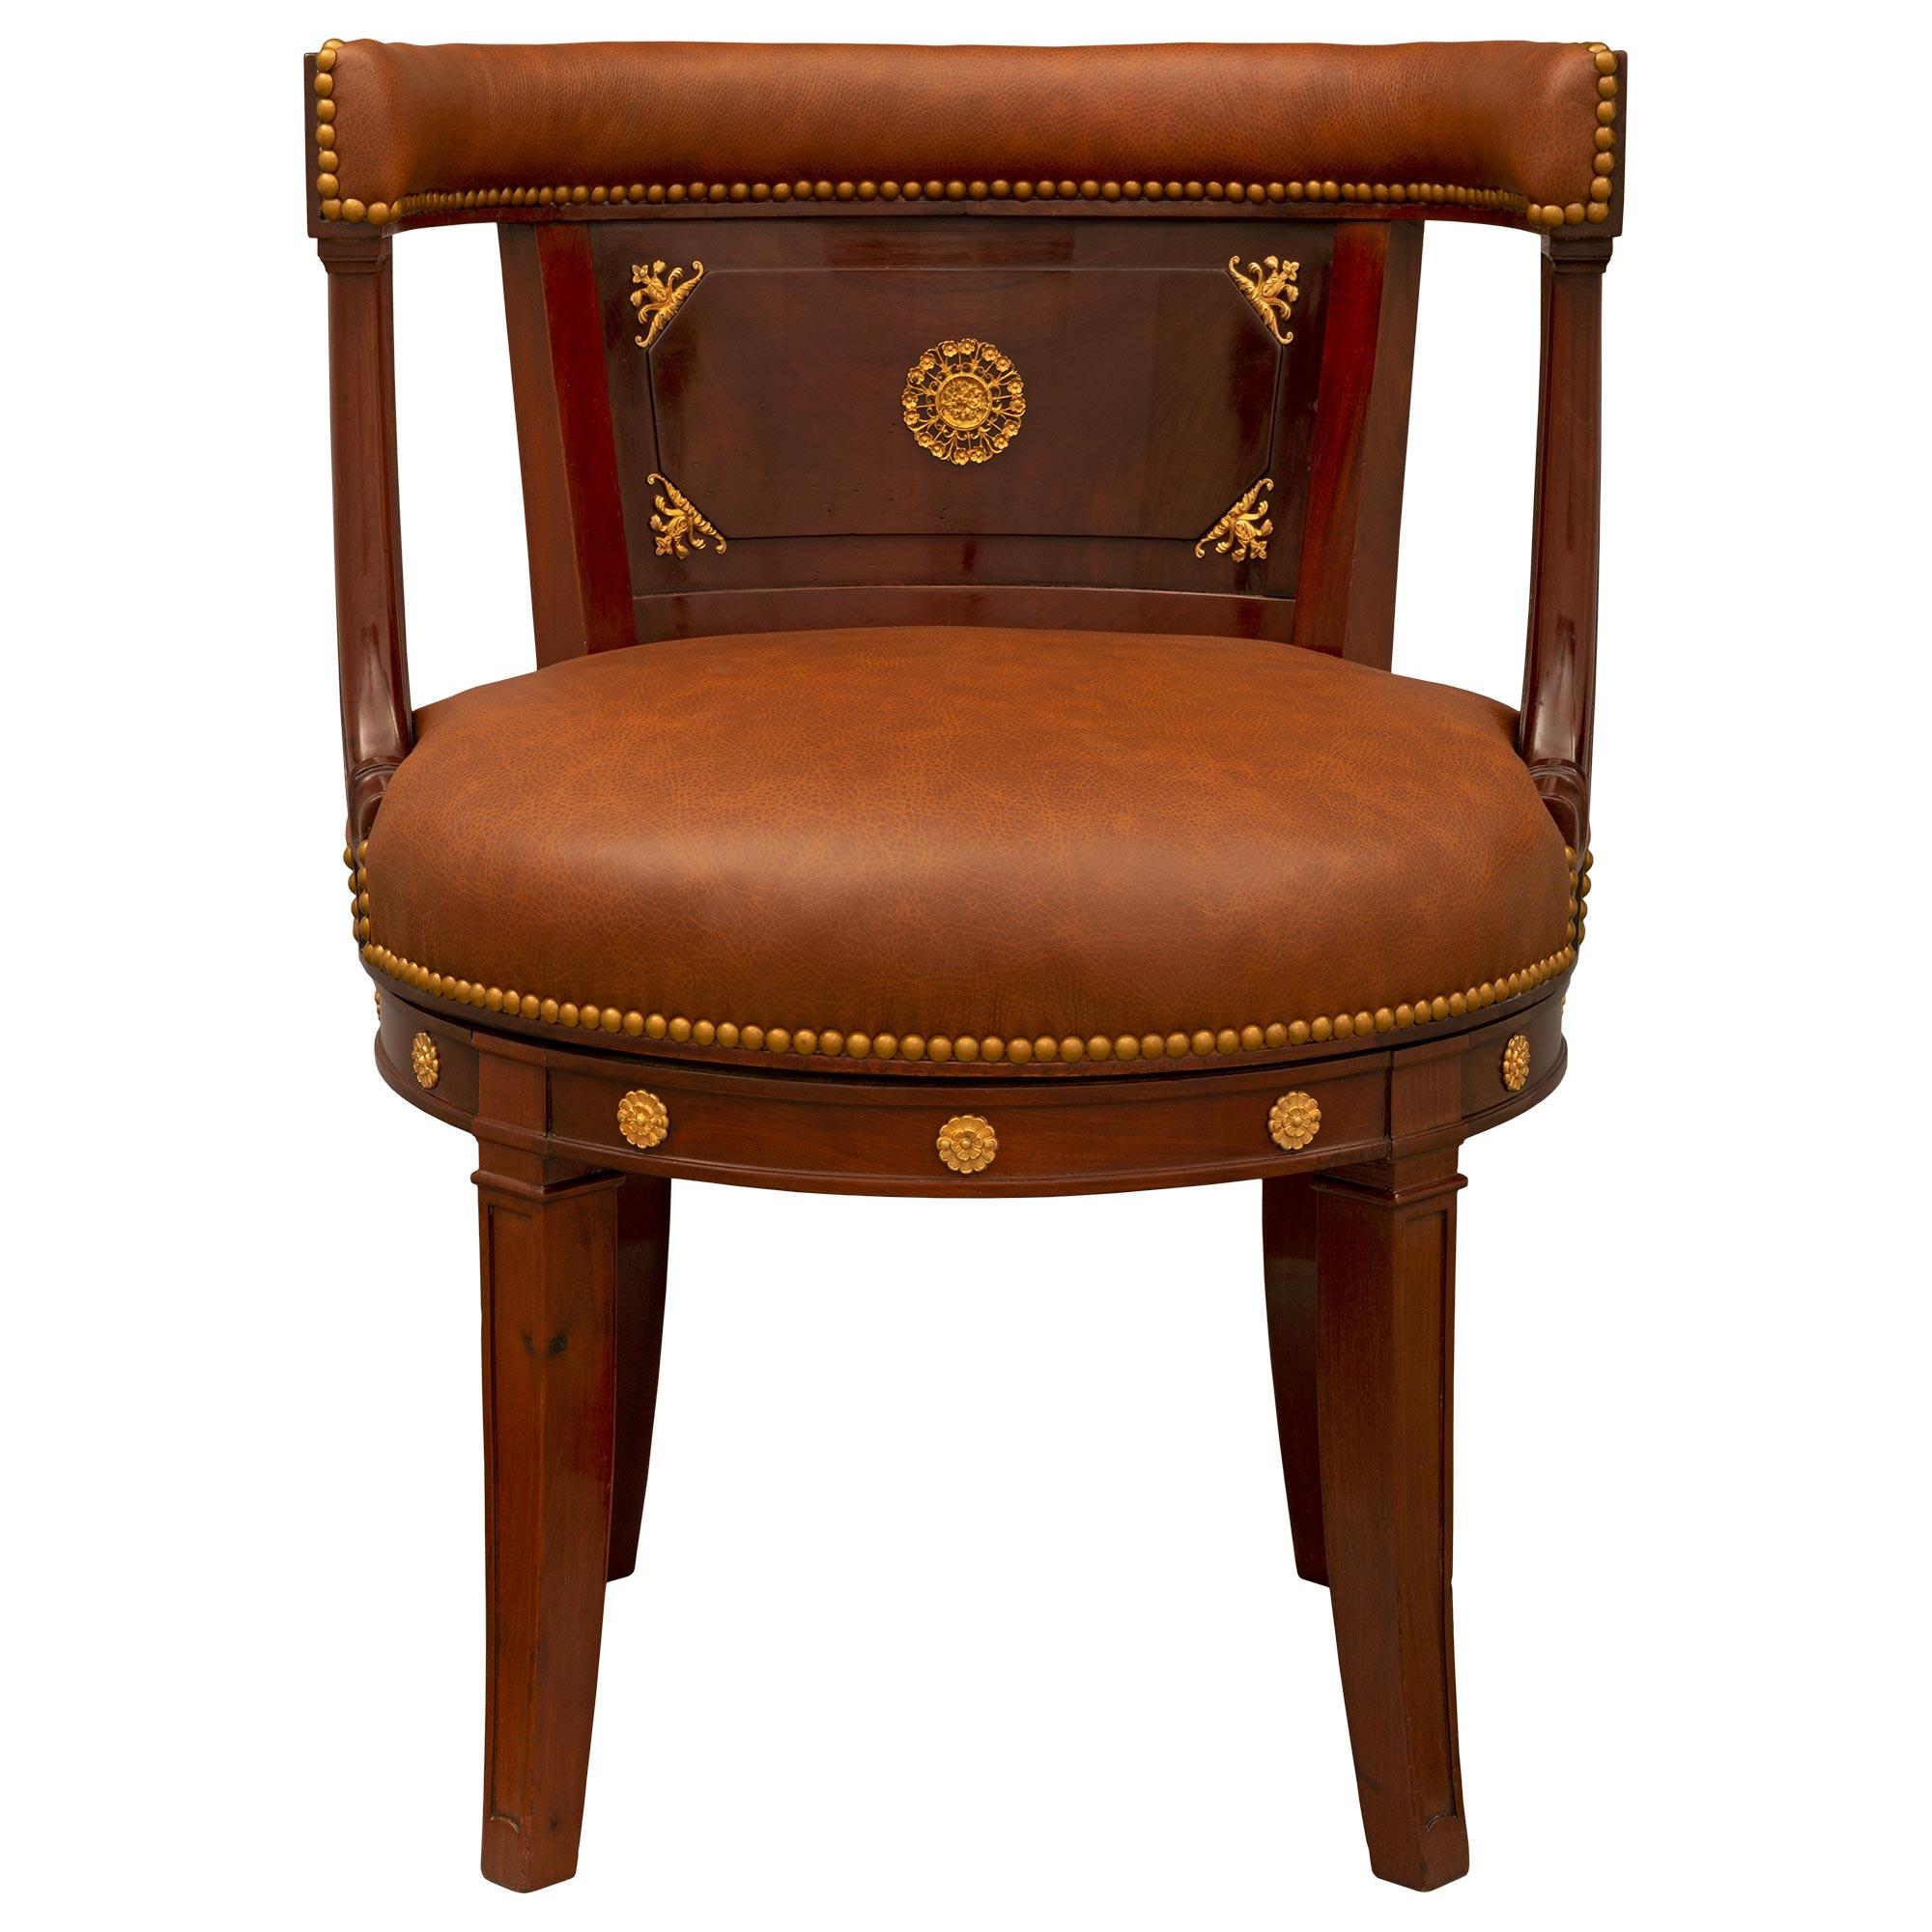 Ein beeindruckender und einzigartiger französischer Empire-Sessel des 19. Jahrhunderts aus Mahagoni und Ormolu. Der Sessel steht auf hübschen, leicht geschwungenen, quadratischen Beinen mit fein geschnitzten, vertieften Motiven und schönen, fein